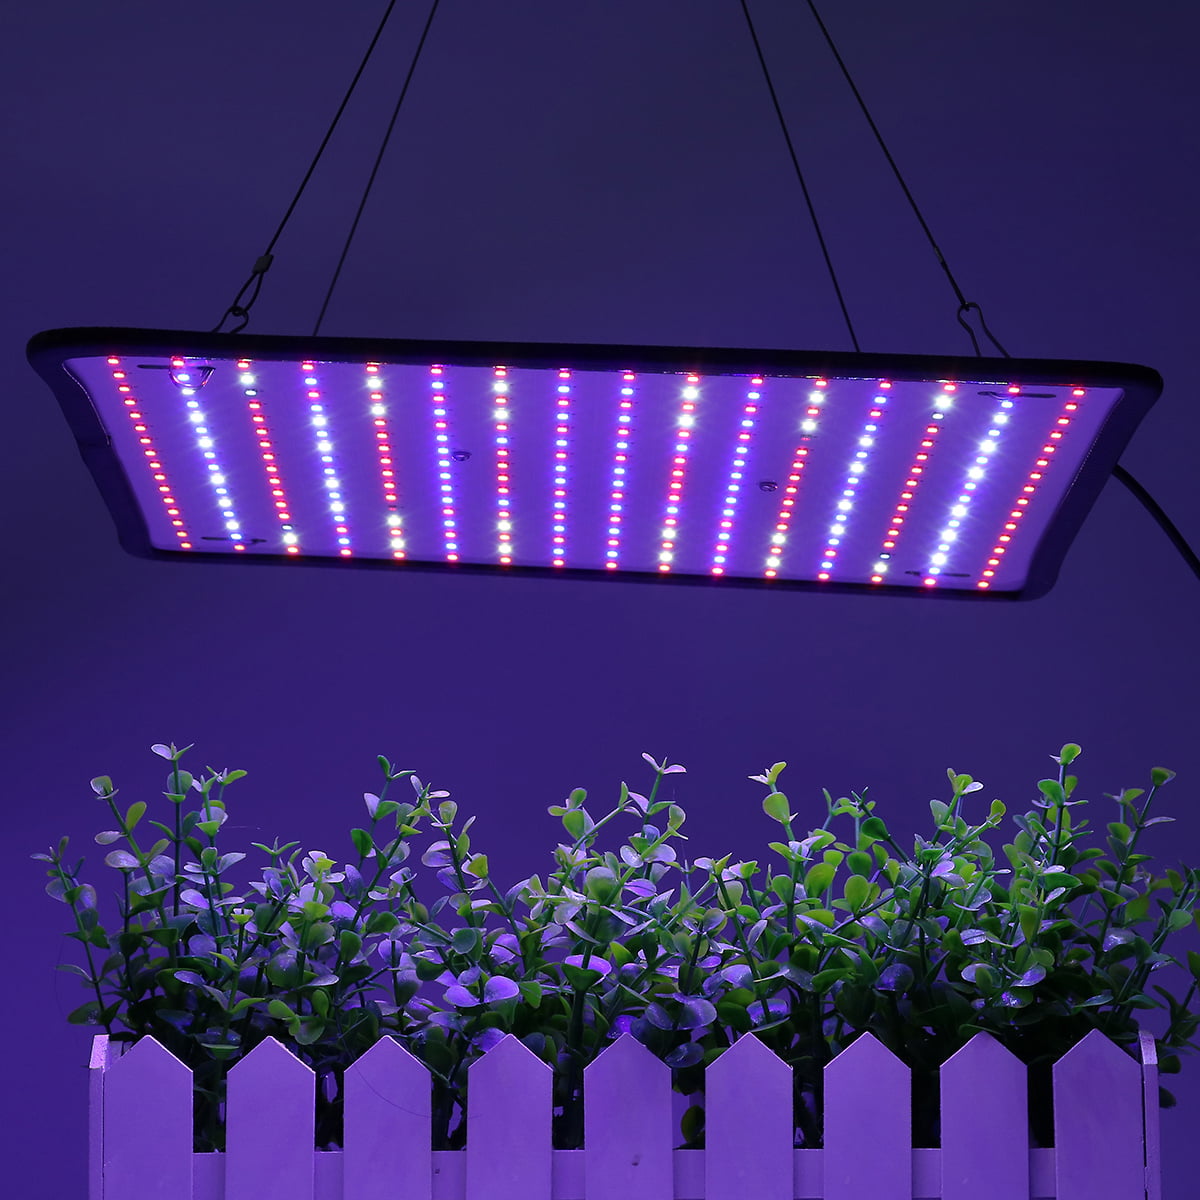 4000W LED Grow Light Hydroponic Plant Veg Flower Full Spectrum Panel Lamp